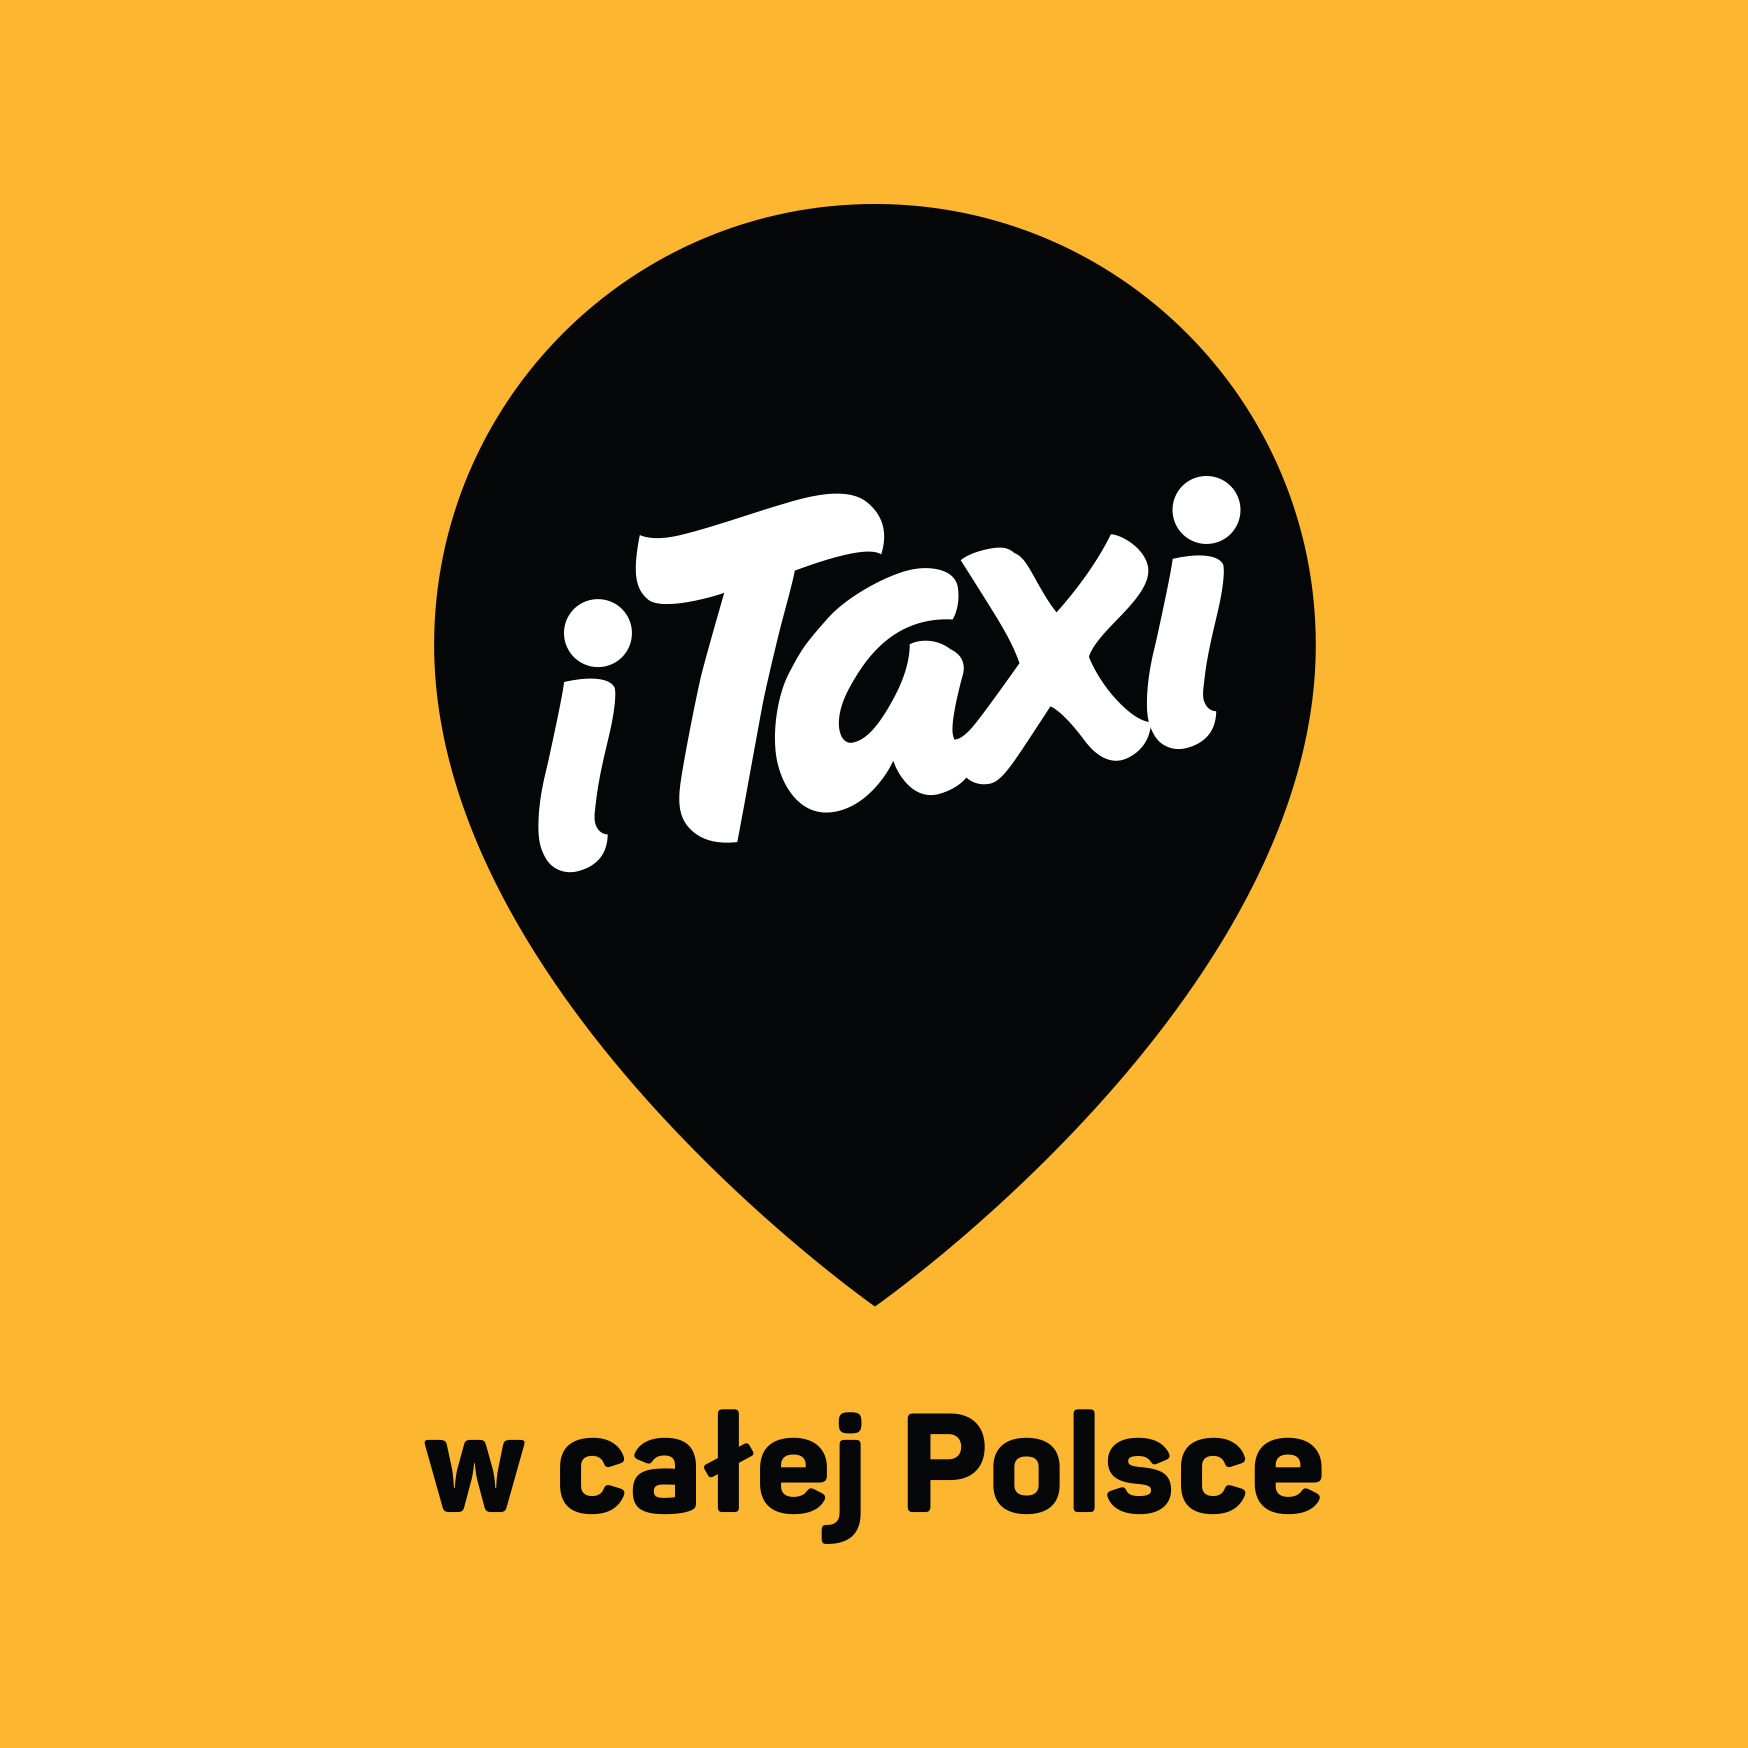 Infolinia ITaxi  Numer taksówki, taksówka telefoniczna, kontakt